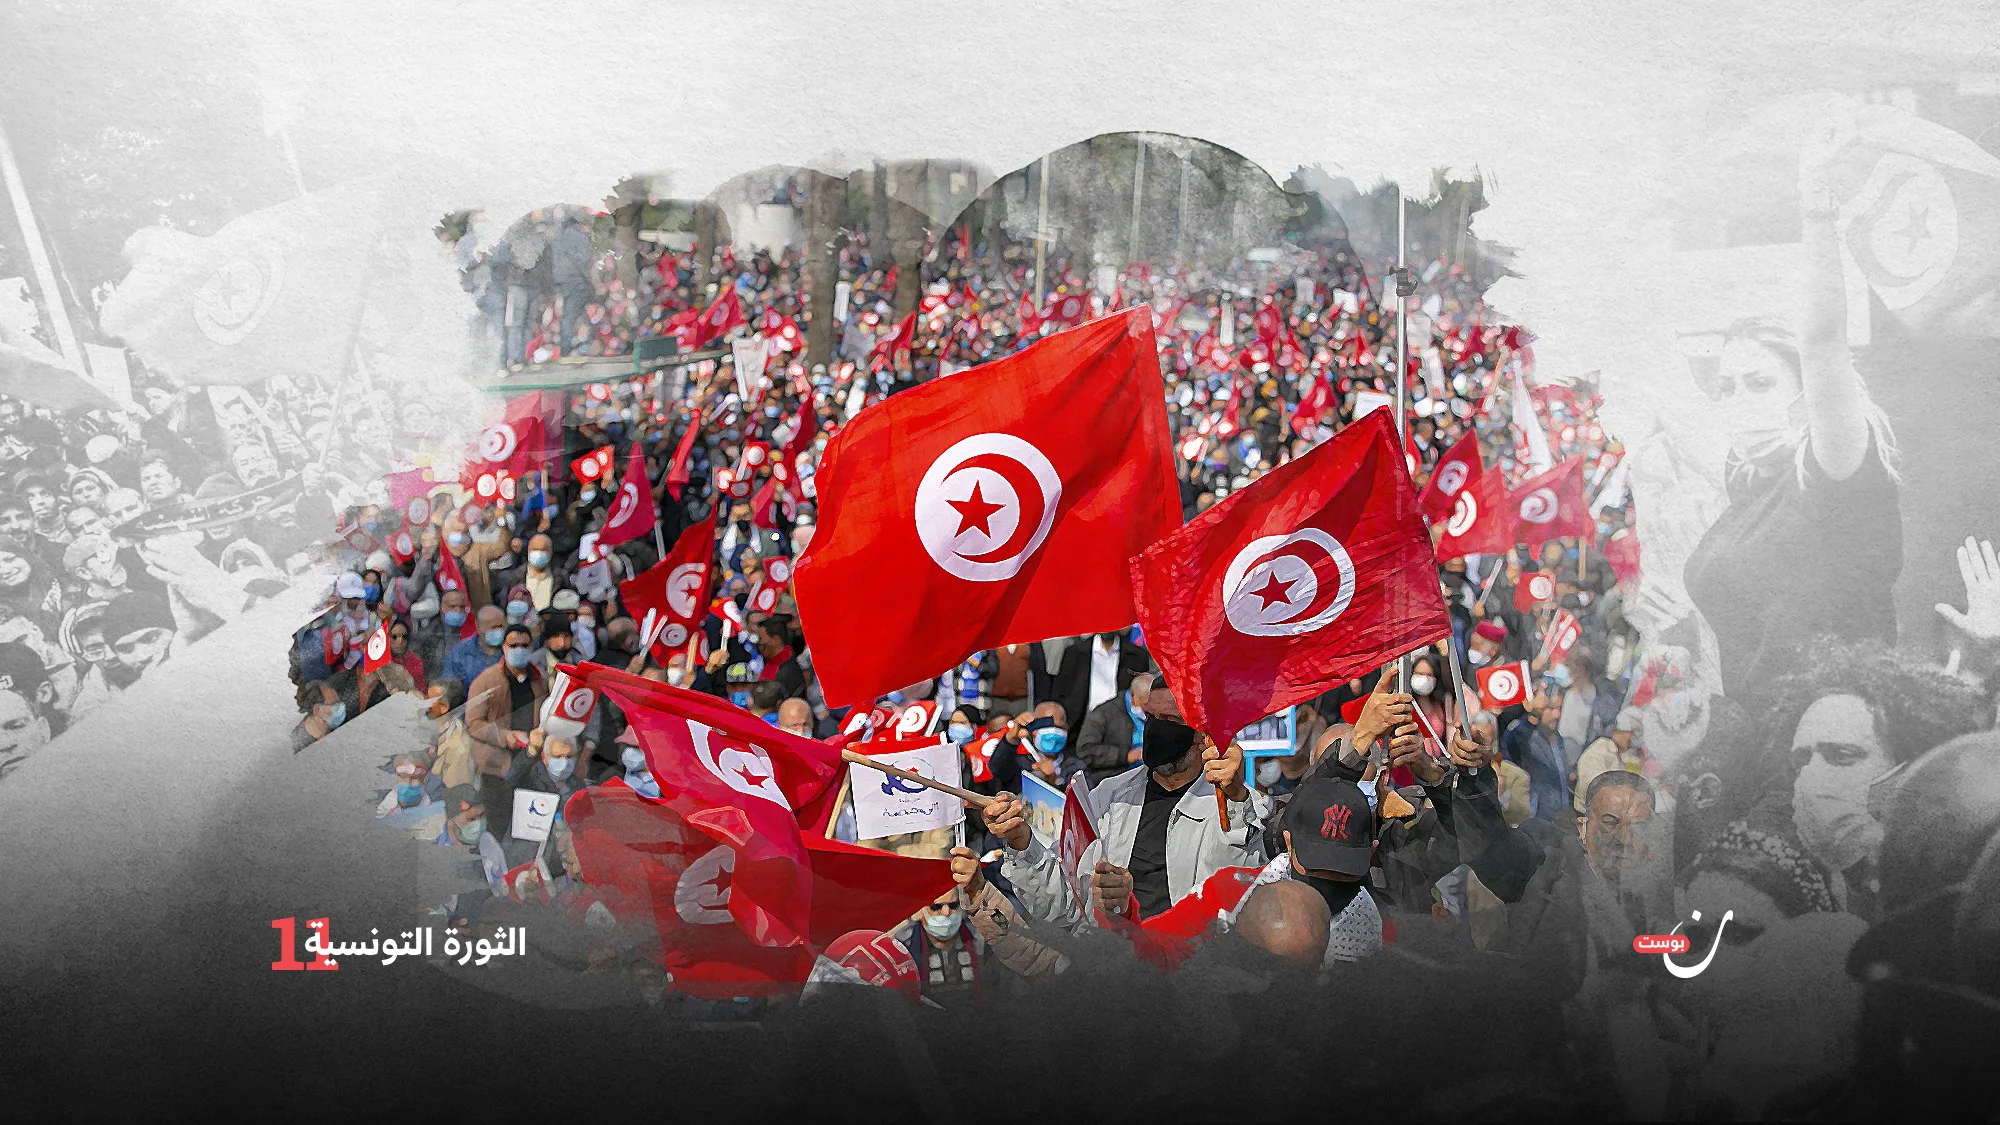 ثورة-تونس-تتعثّر-ولا-تسقط-أبدًا (1)